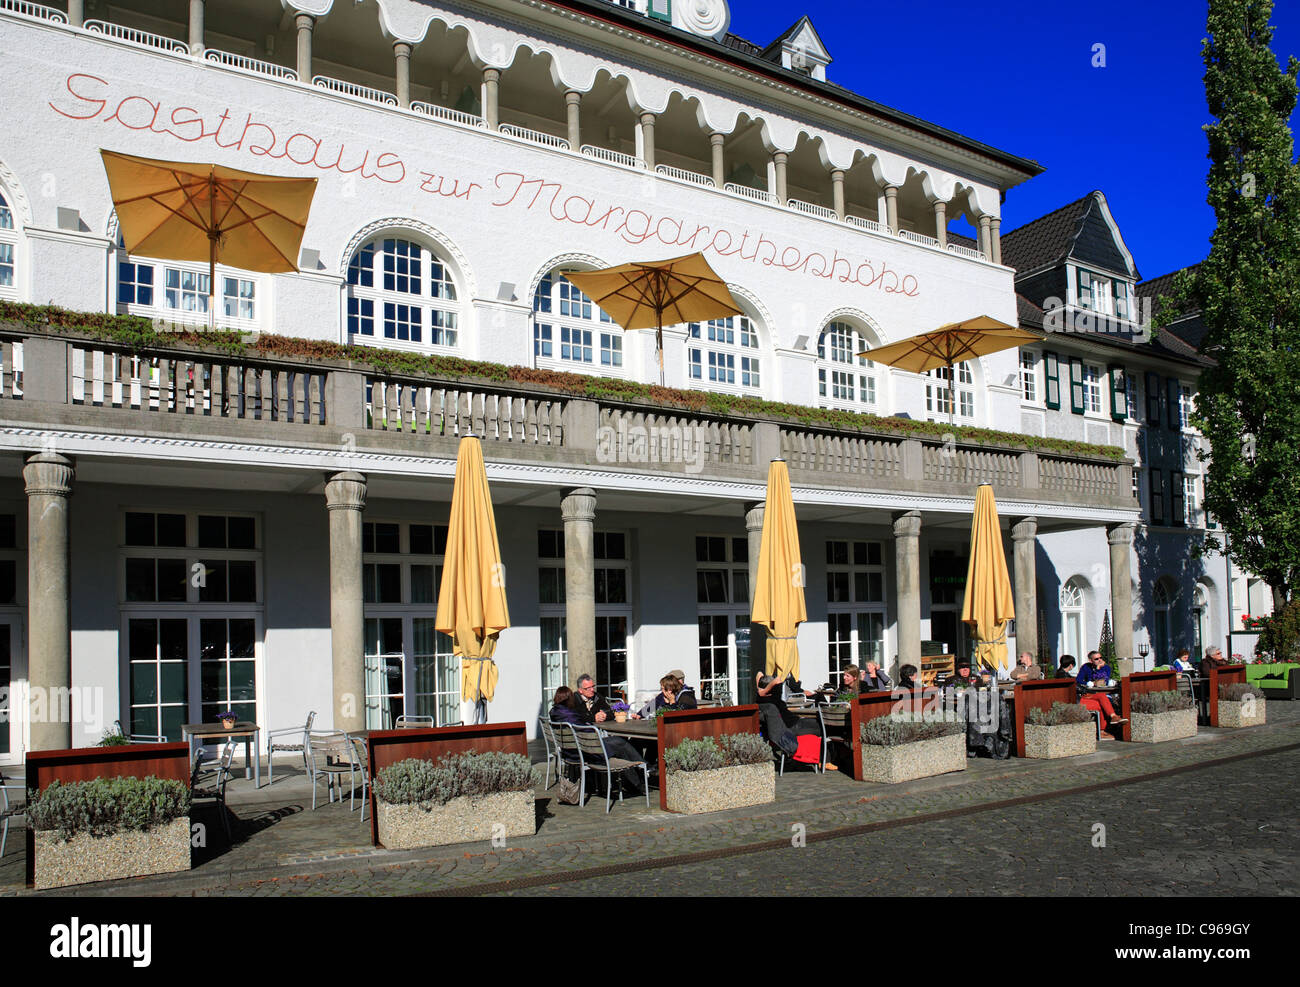 Hotel e ristorante in città giardino storica margarethenhöhe da margarethe krupp essen Renania settentrionale - Vestfalia Germania Europa Foto Stock